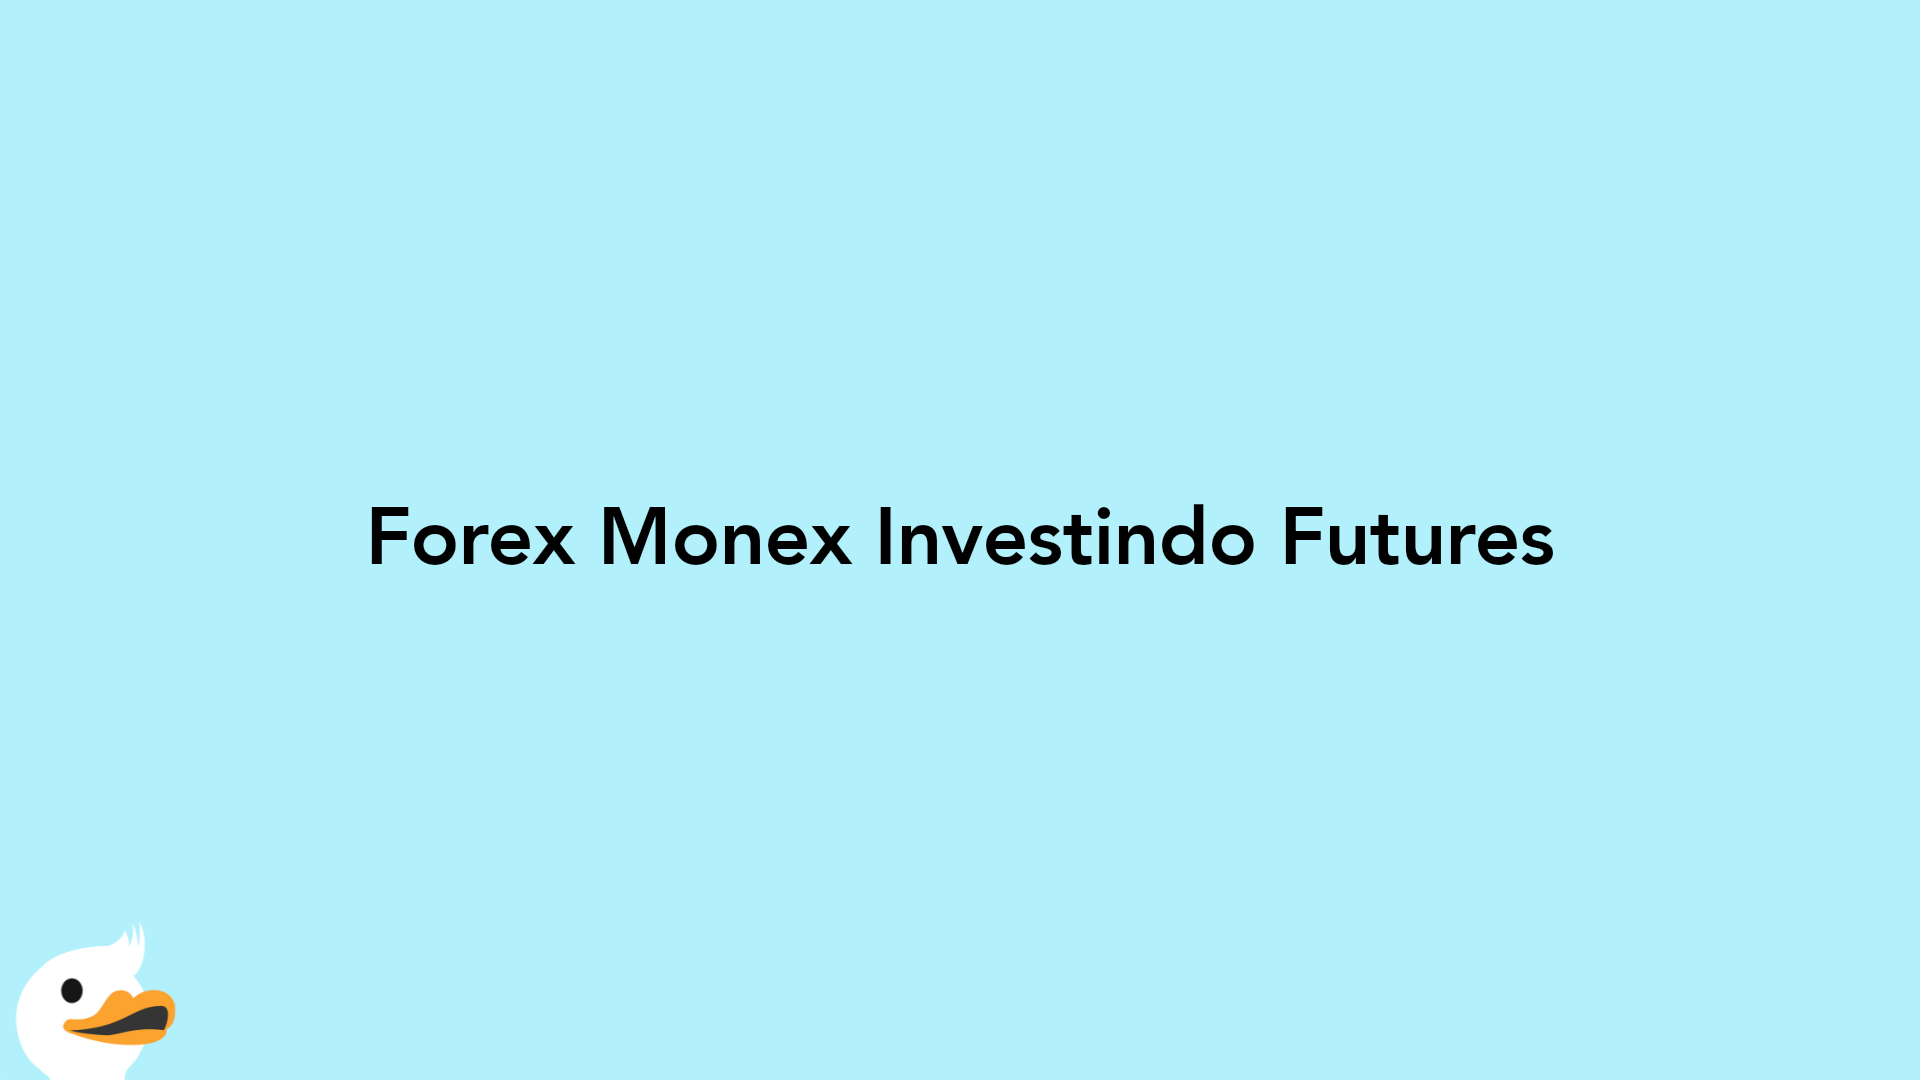 Forex Monex Investindo Futures